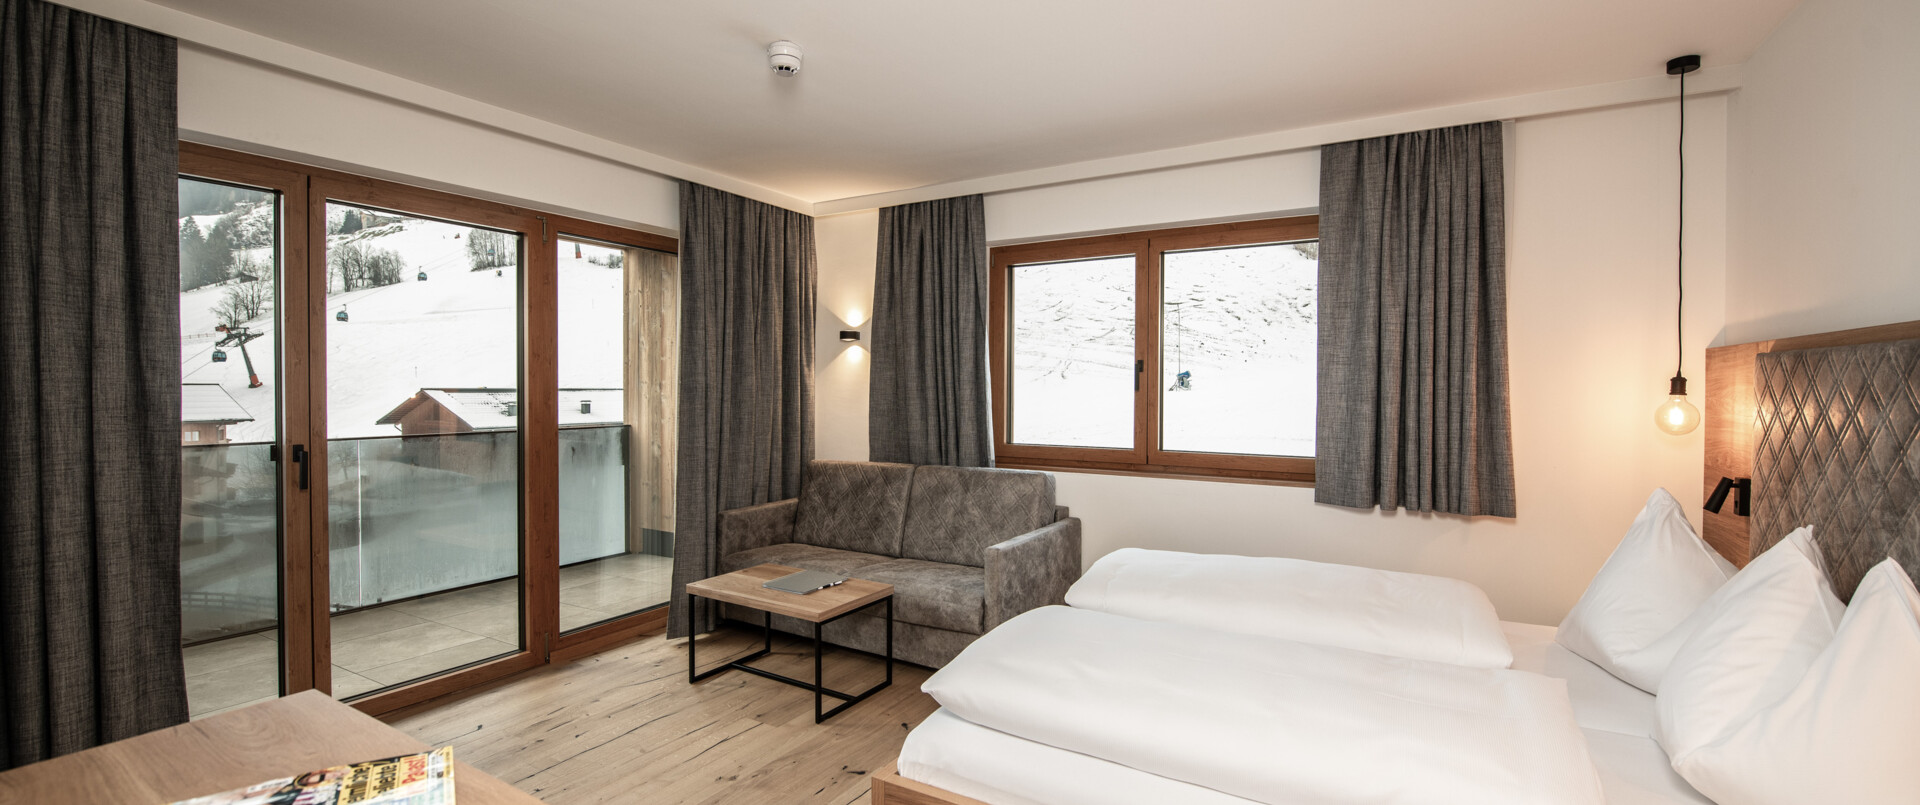 Suite Diellehen mit Couch, Doppelbett und Balkon im B&B Hotel Diellehen in Großarl.